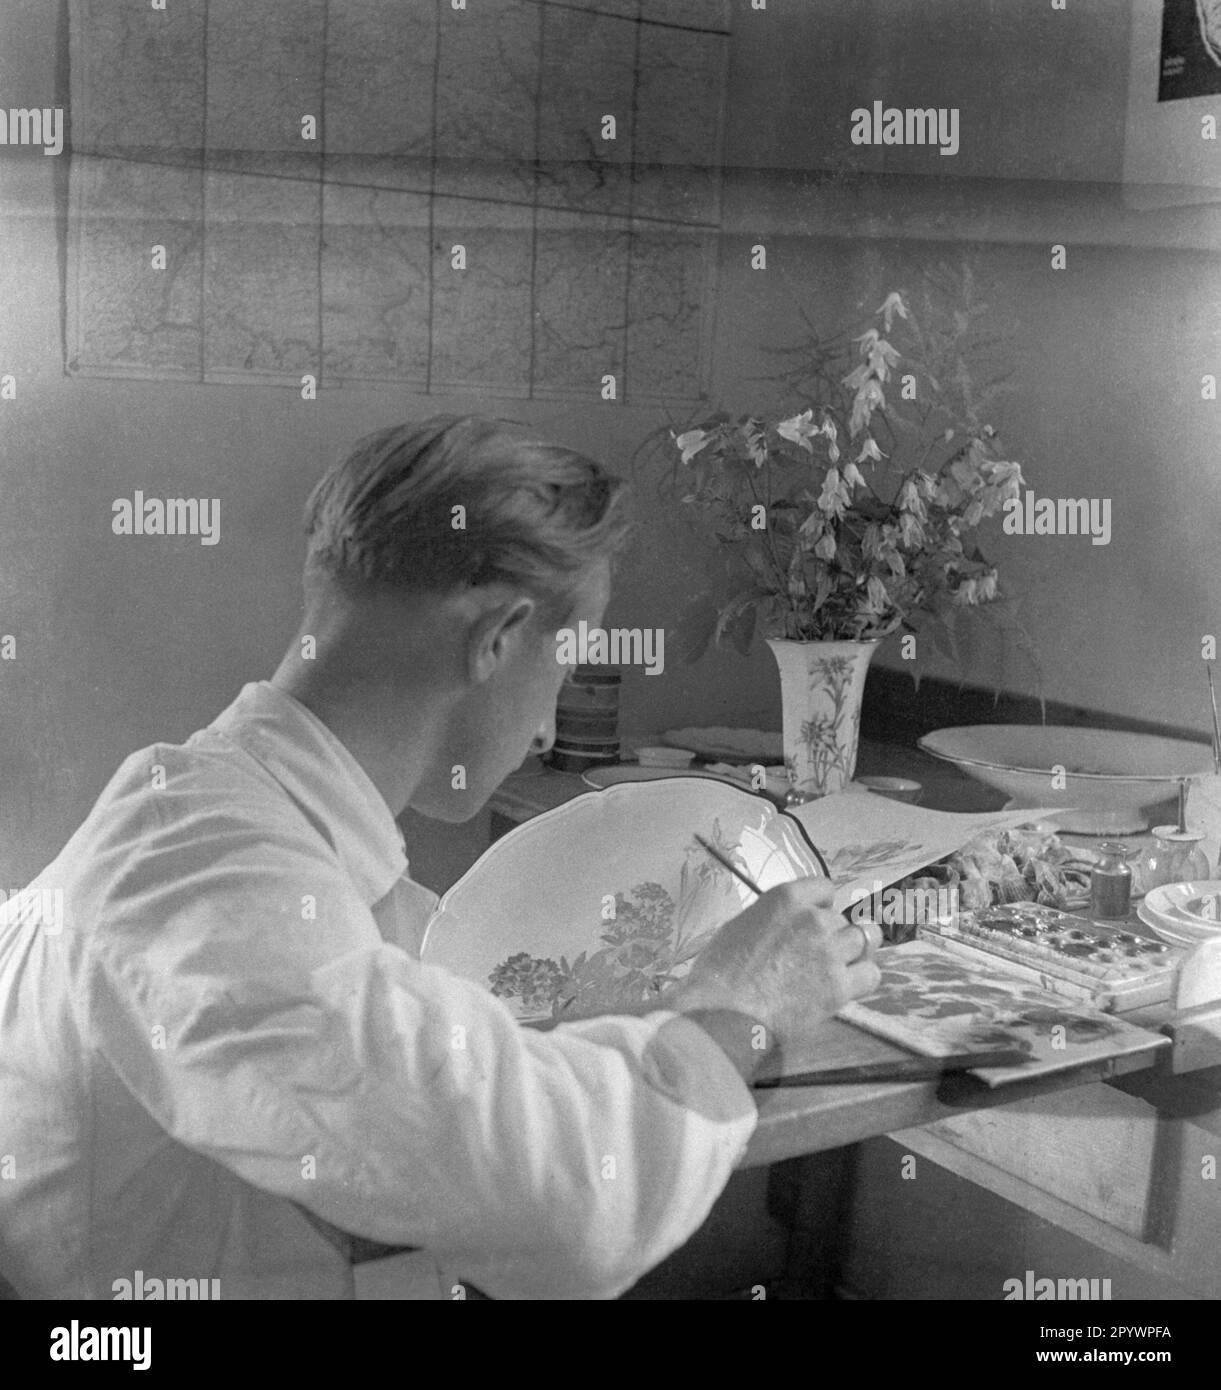 L'uomo dipinge porcellana con fiori selvatici. Foto non datata intorno al 1935 Foto Stock